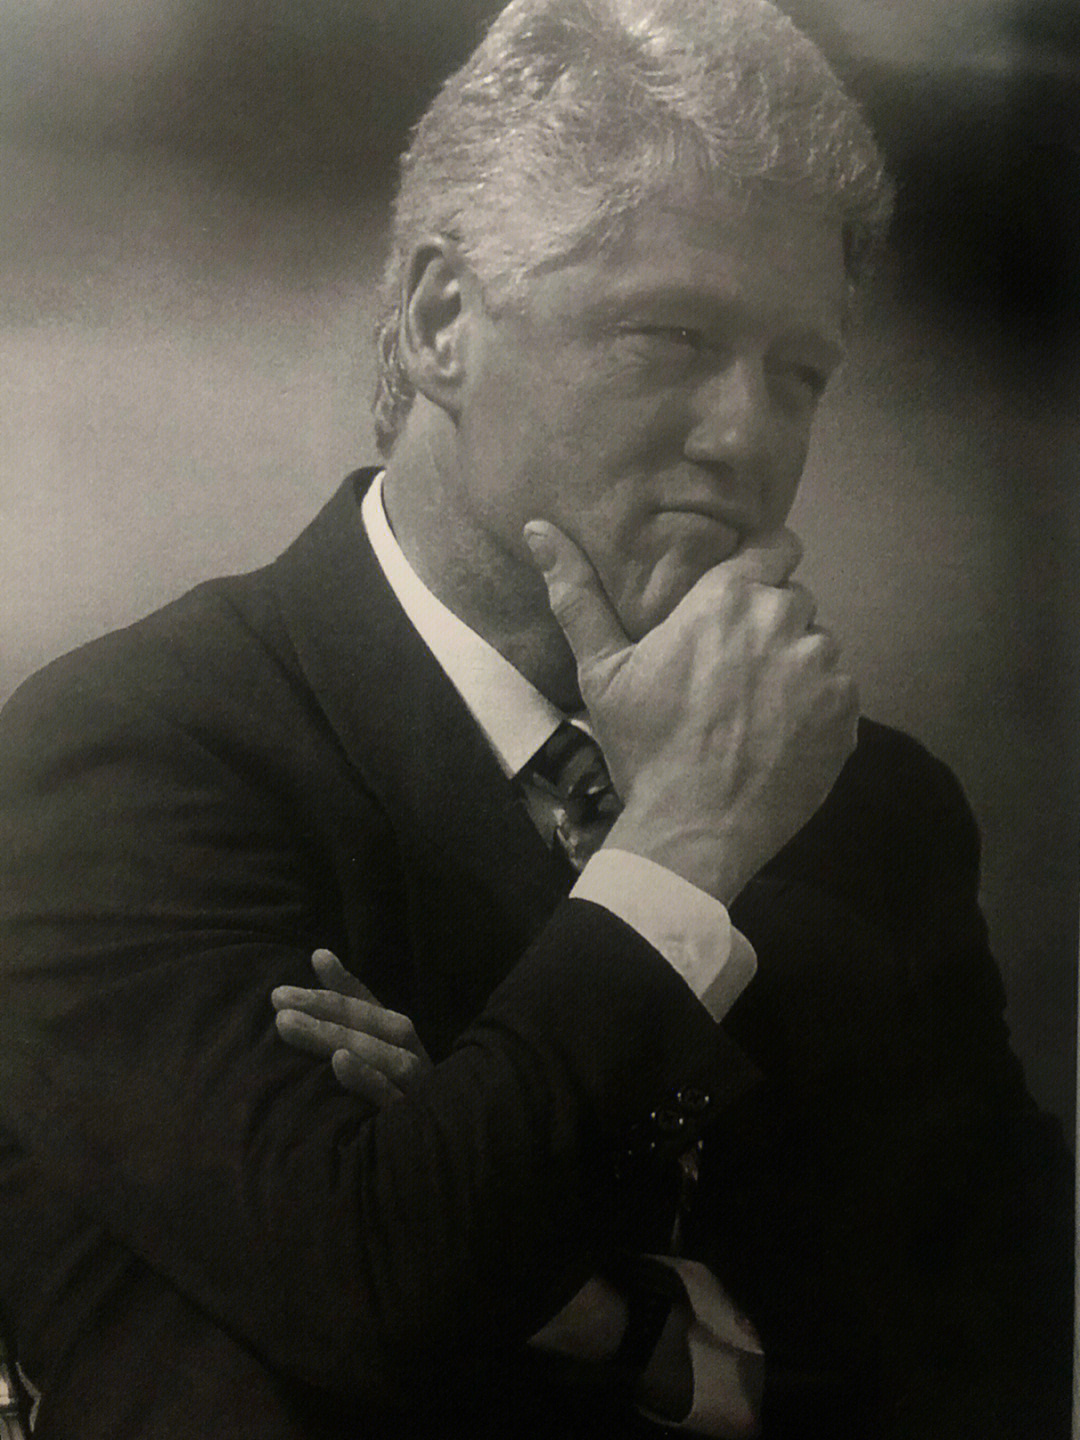 1993年,47岁的比尔·克林顿当选美国总统的第一年,《时代周刊》就给